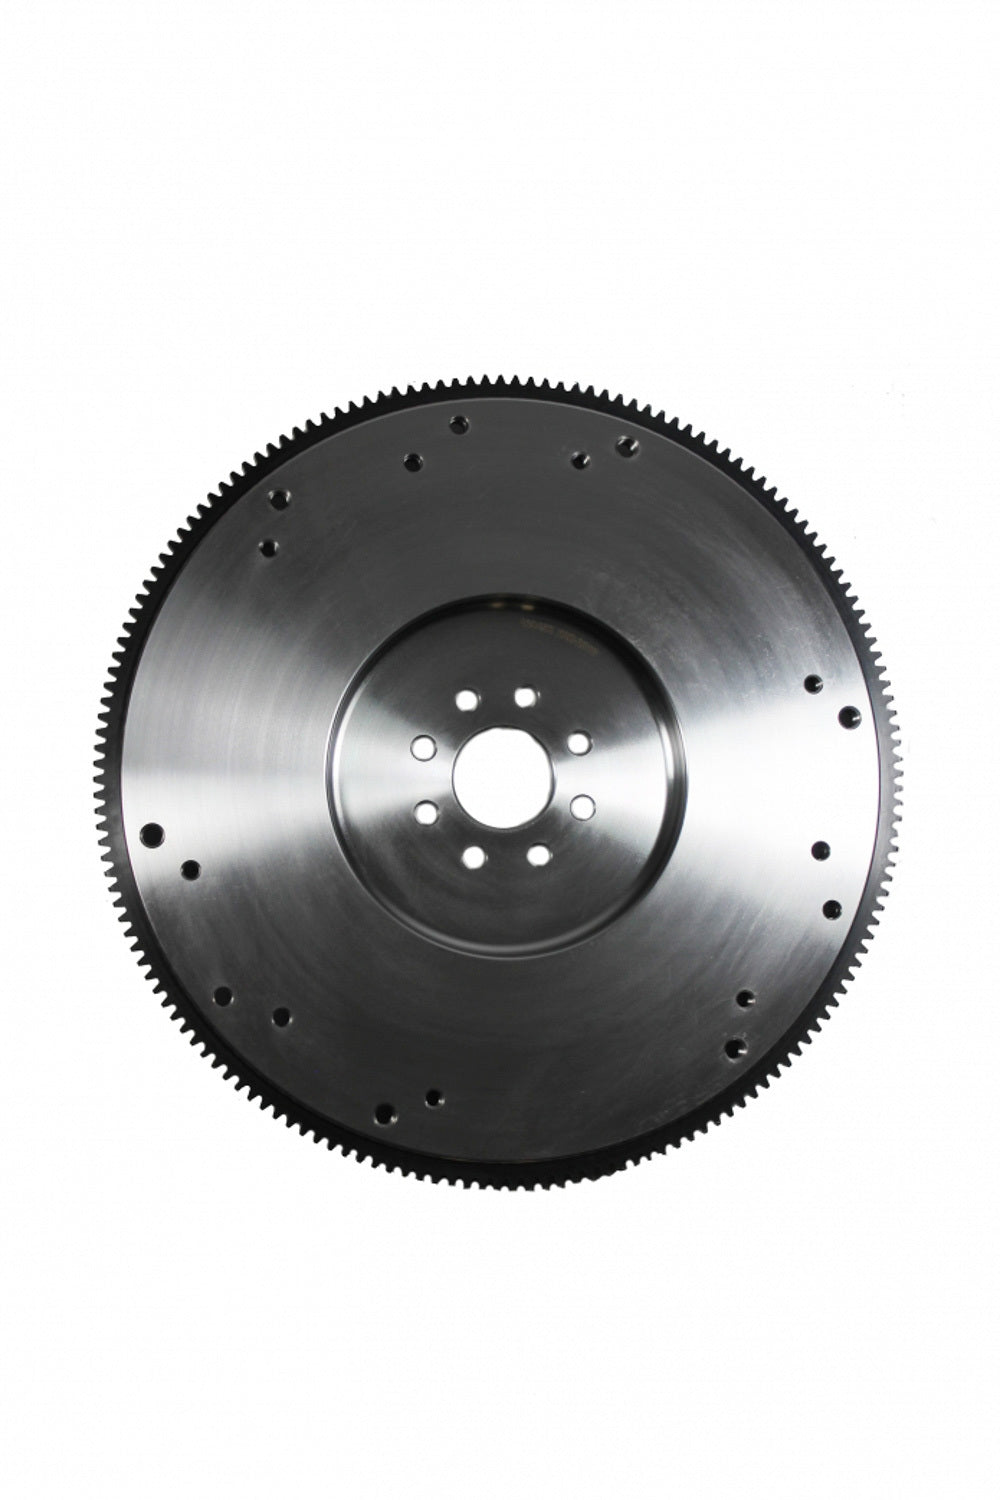 Billet Steel Flywheel - SBC 168 Tooth SFI 22lbs